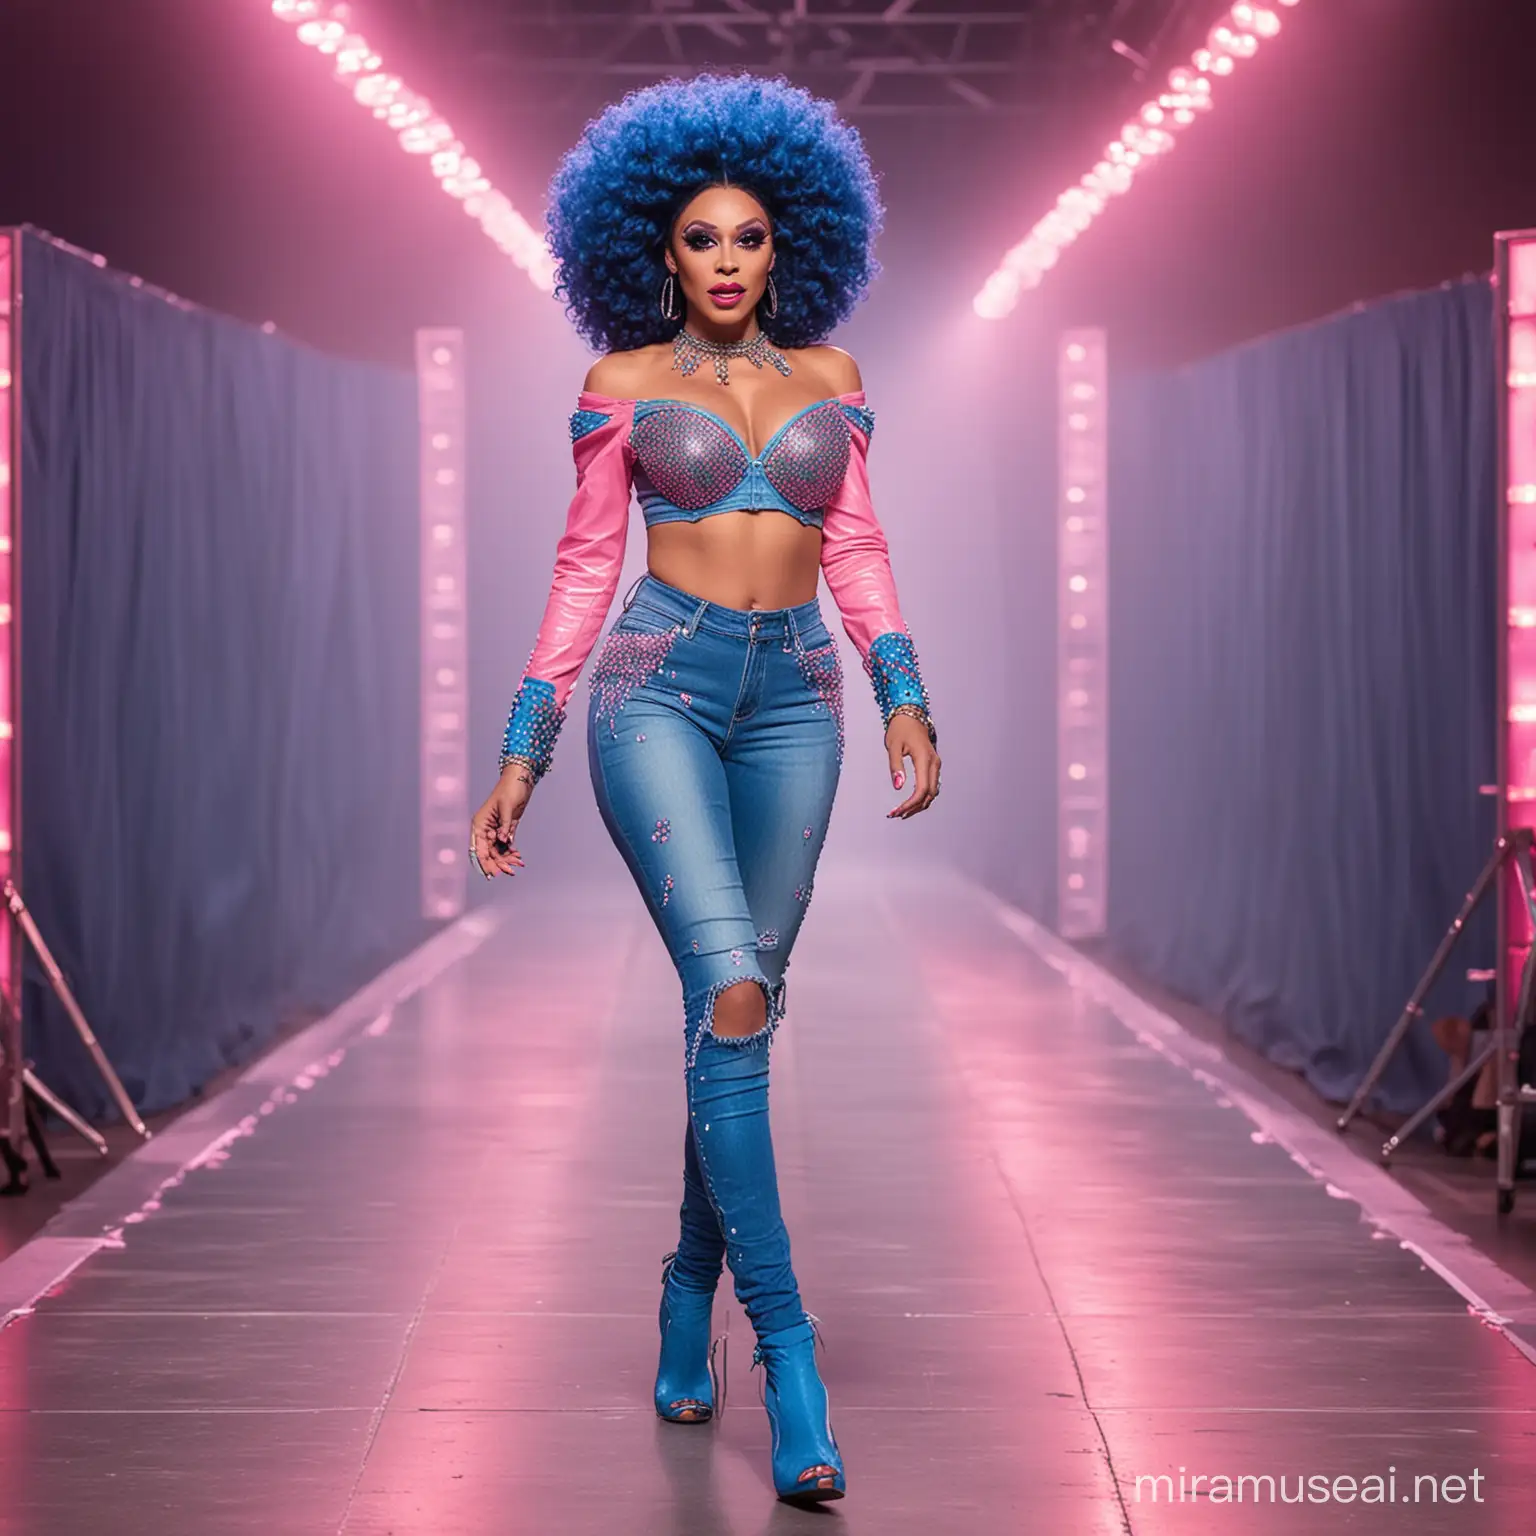 Brazilian Neon Drag Queen Struts DenimInspired Outfit on RuPauls Drag Race Runway